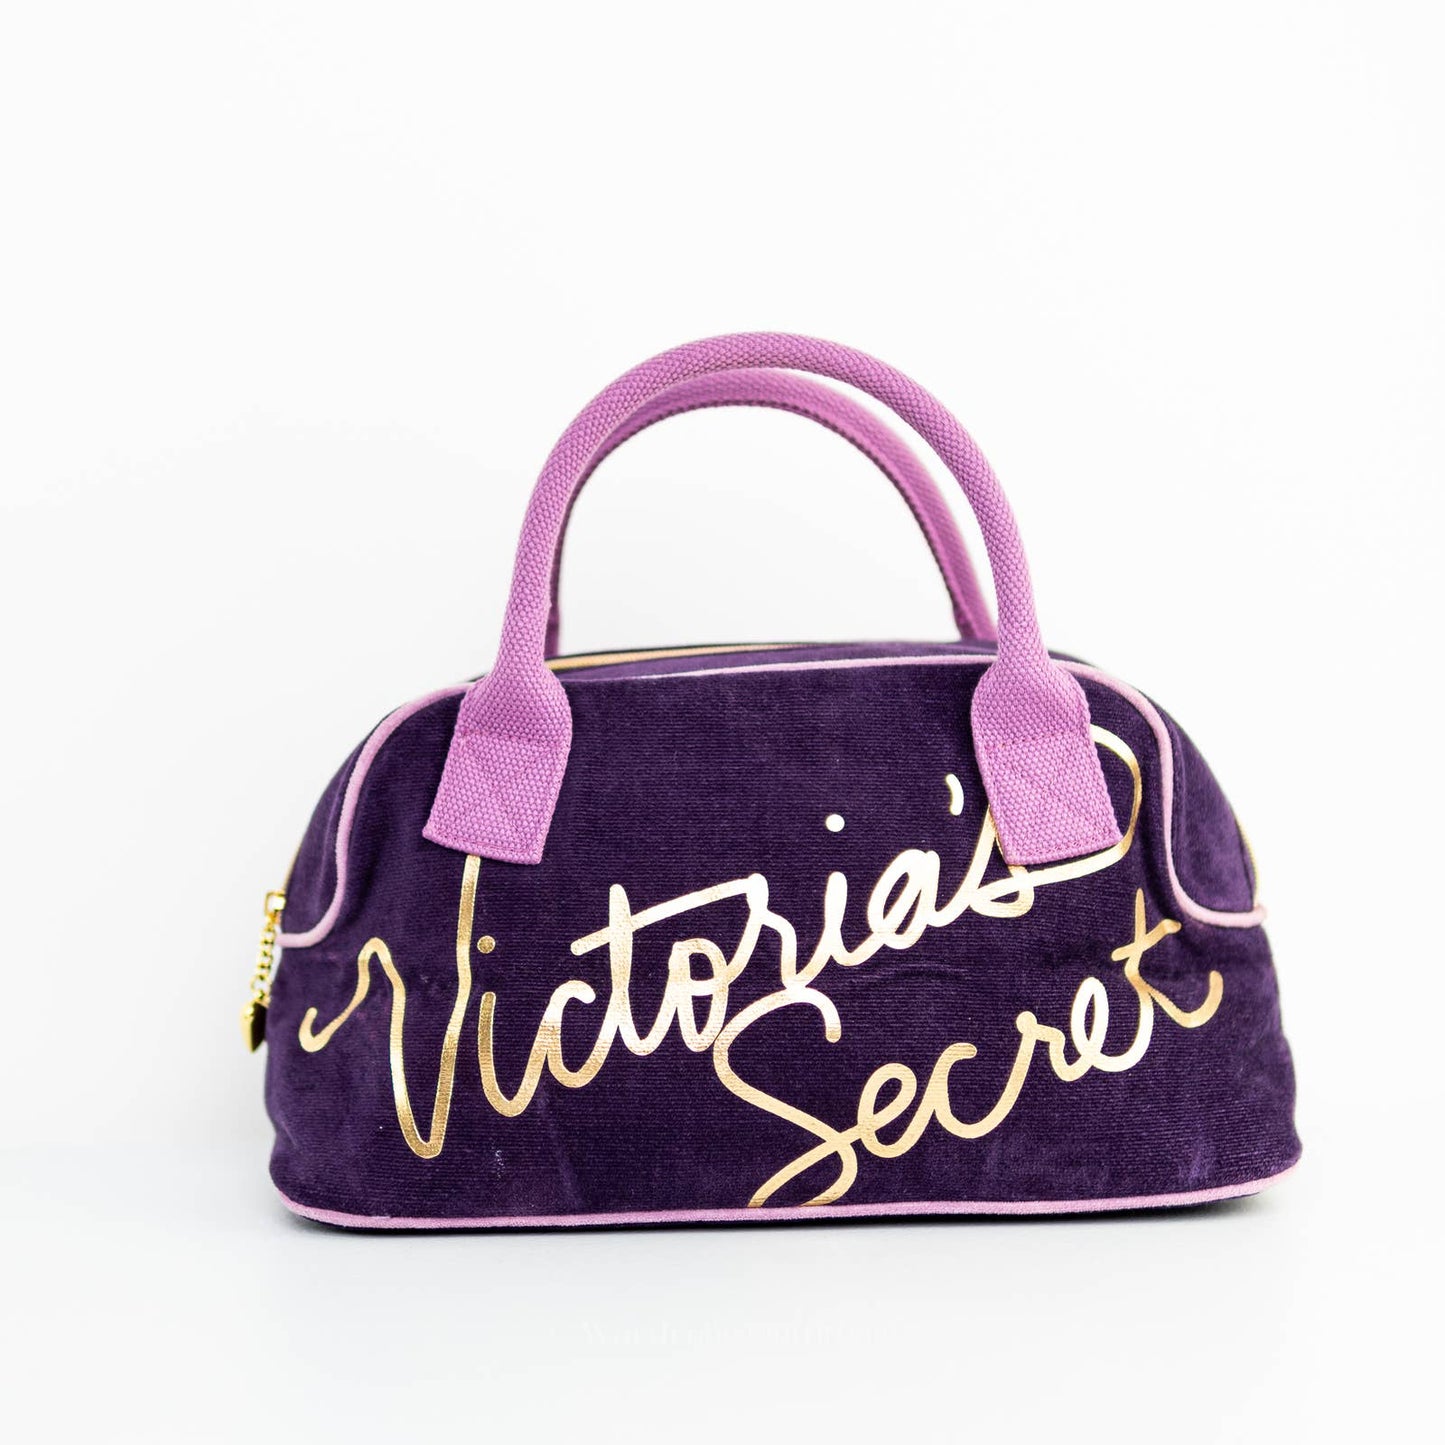 Victoria's Secret Sexy Plush Velvet Bag Satchel Shoulder Bag Purse Tote